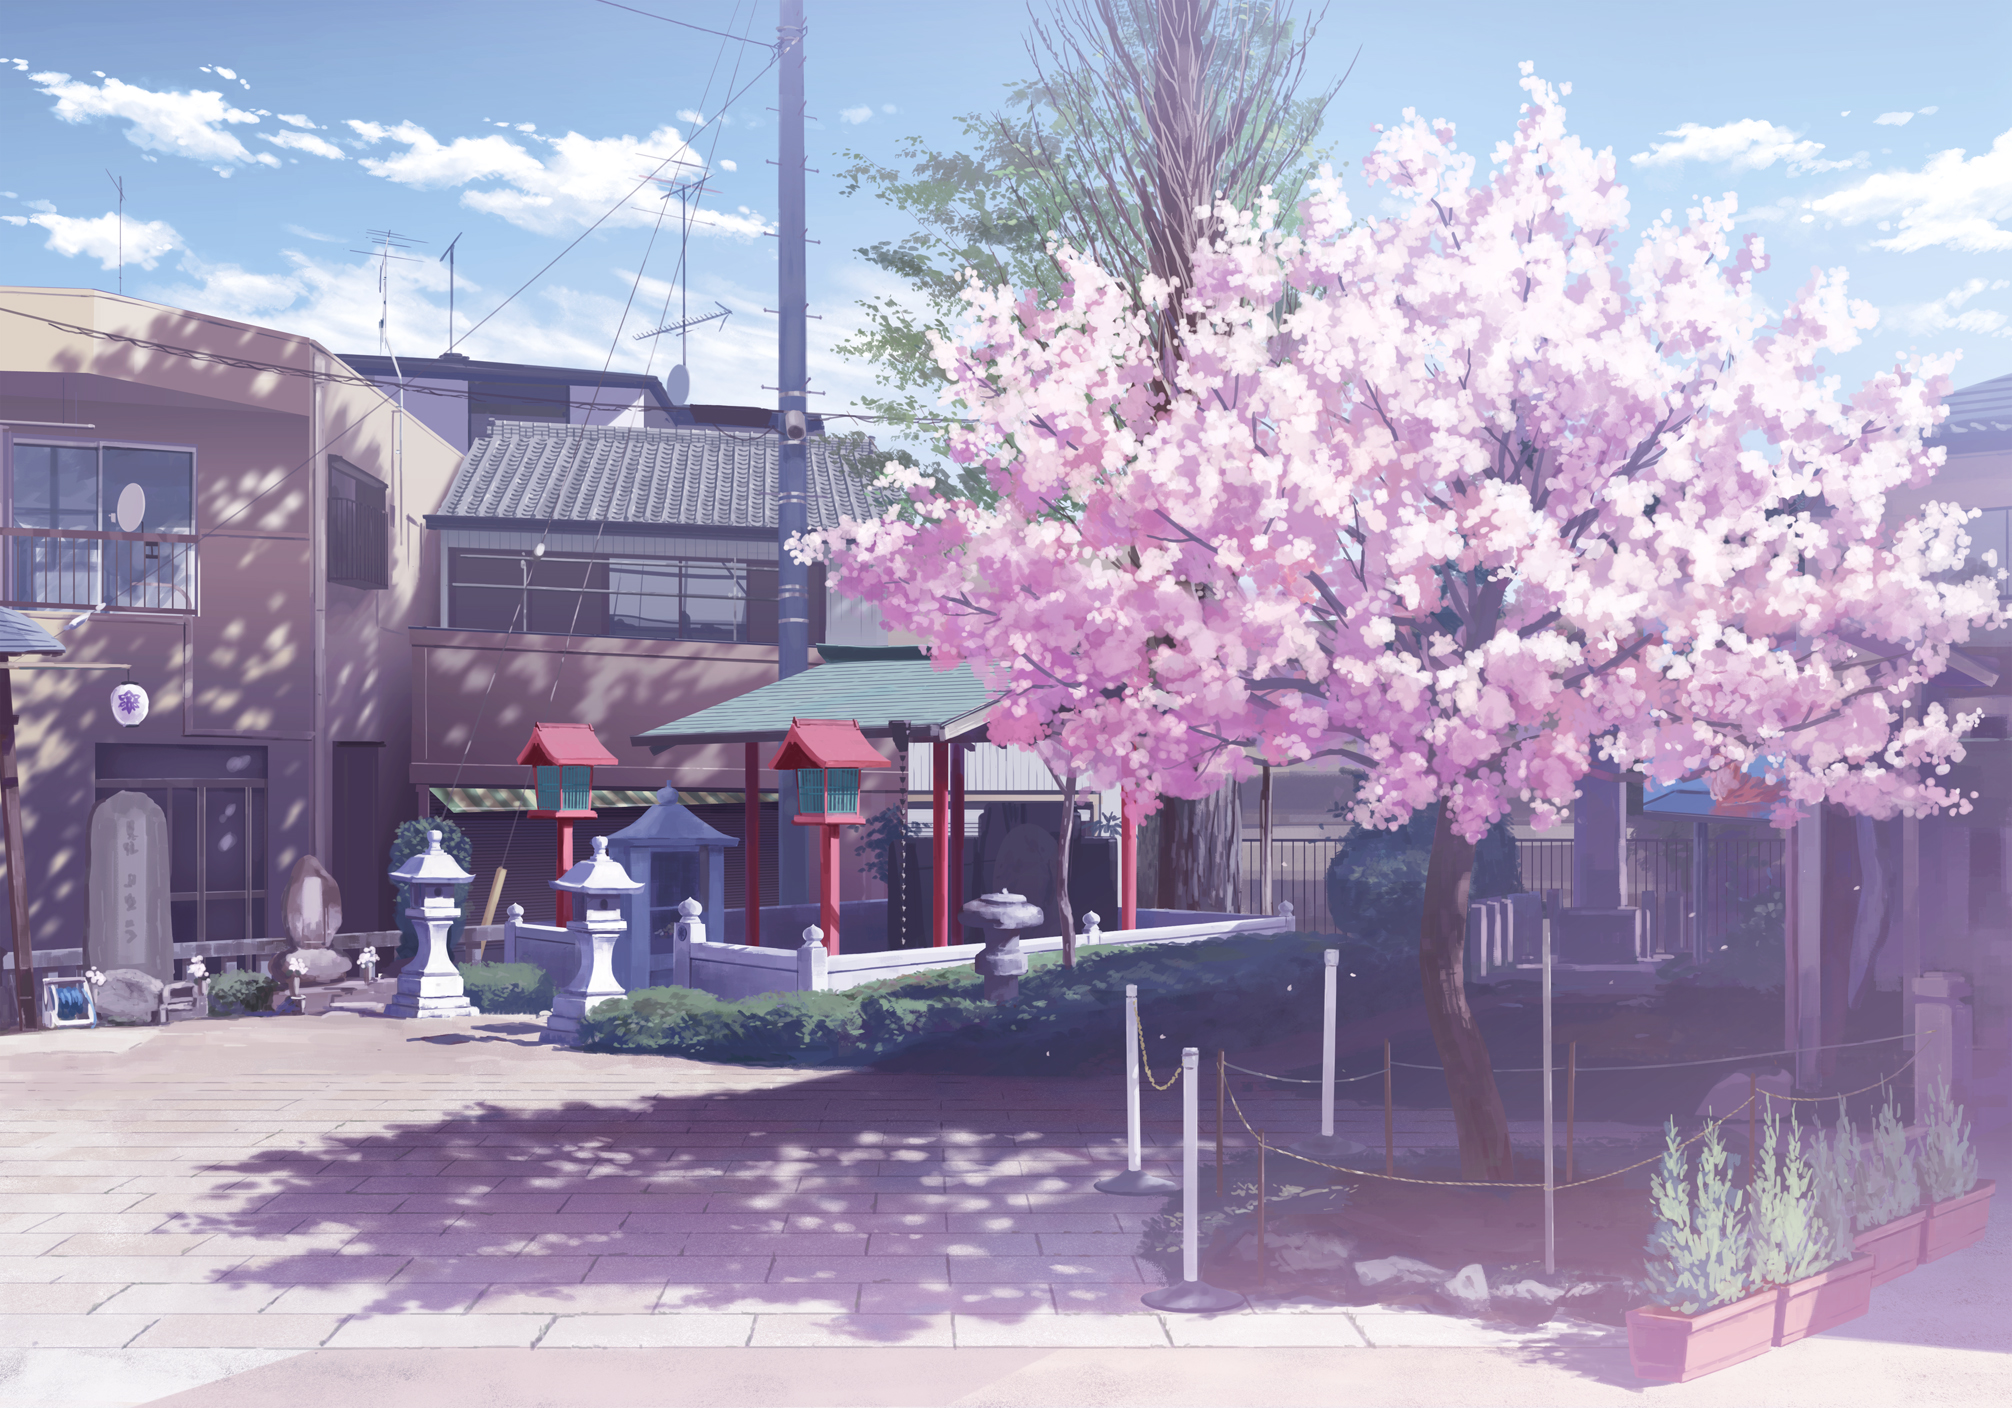 樱花树二次元壁纸图片